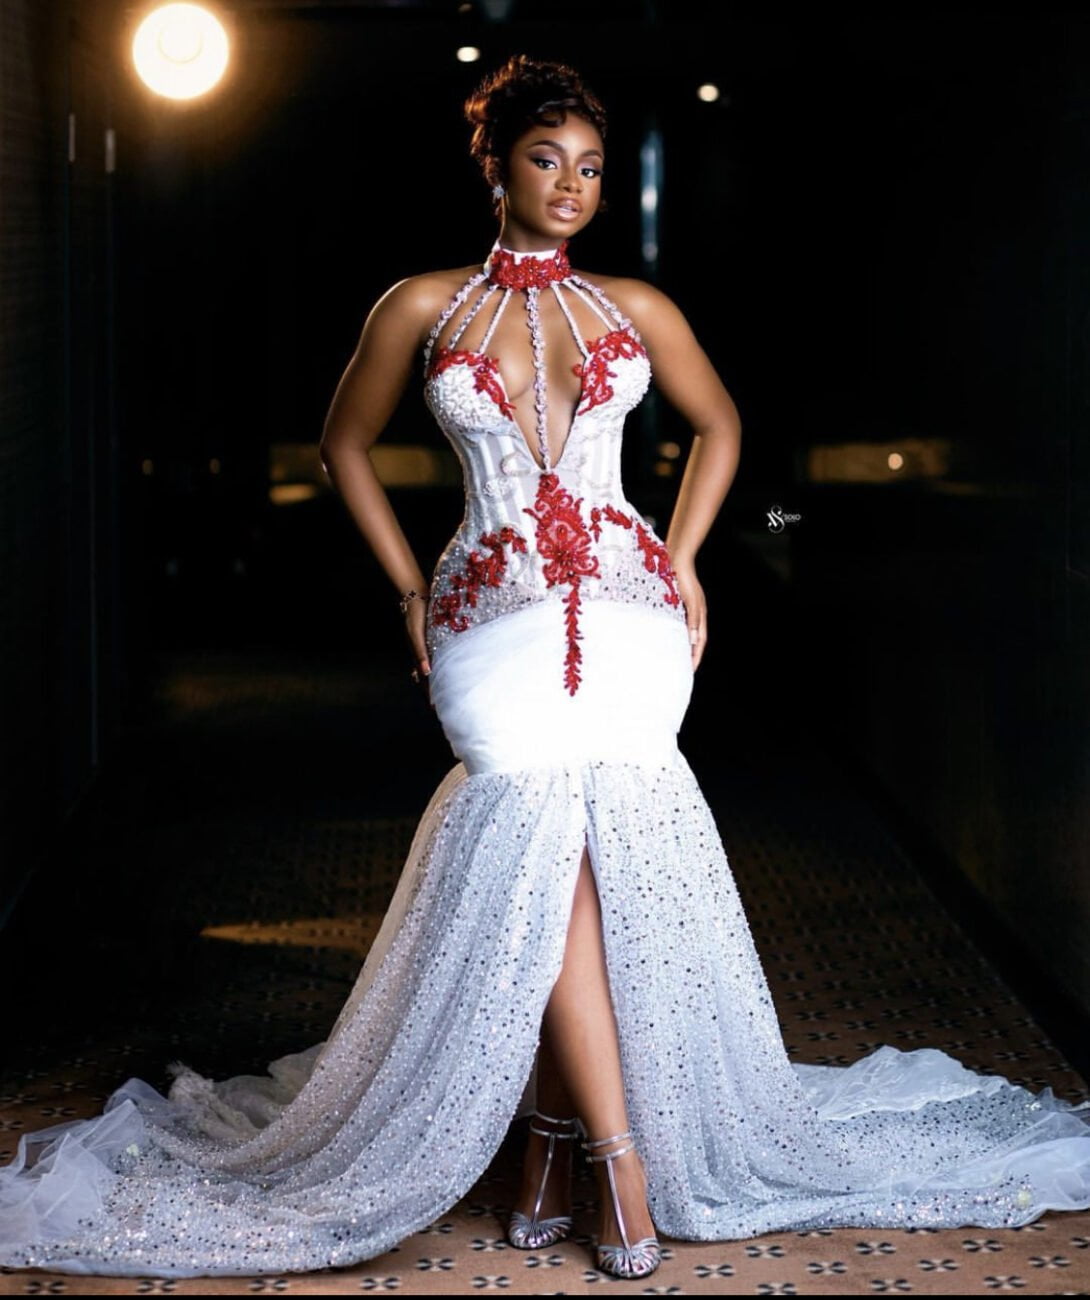 Priscilla Ojo in a corset dress that has a fish shape design.